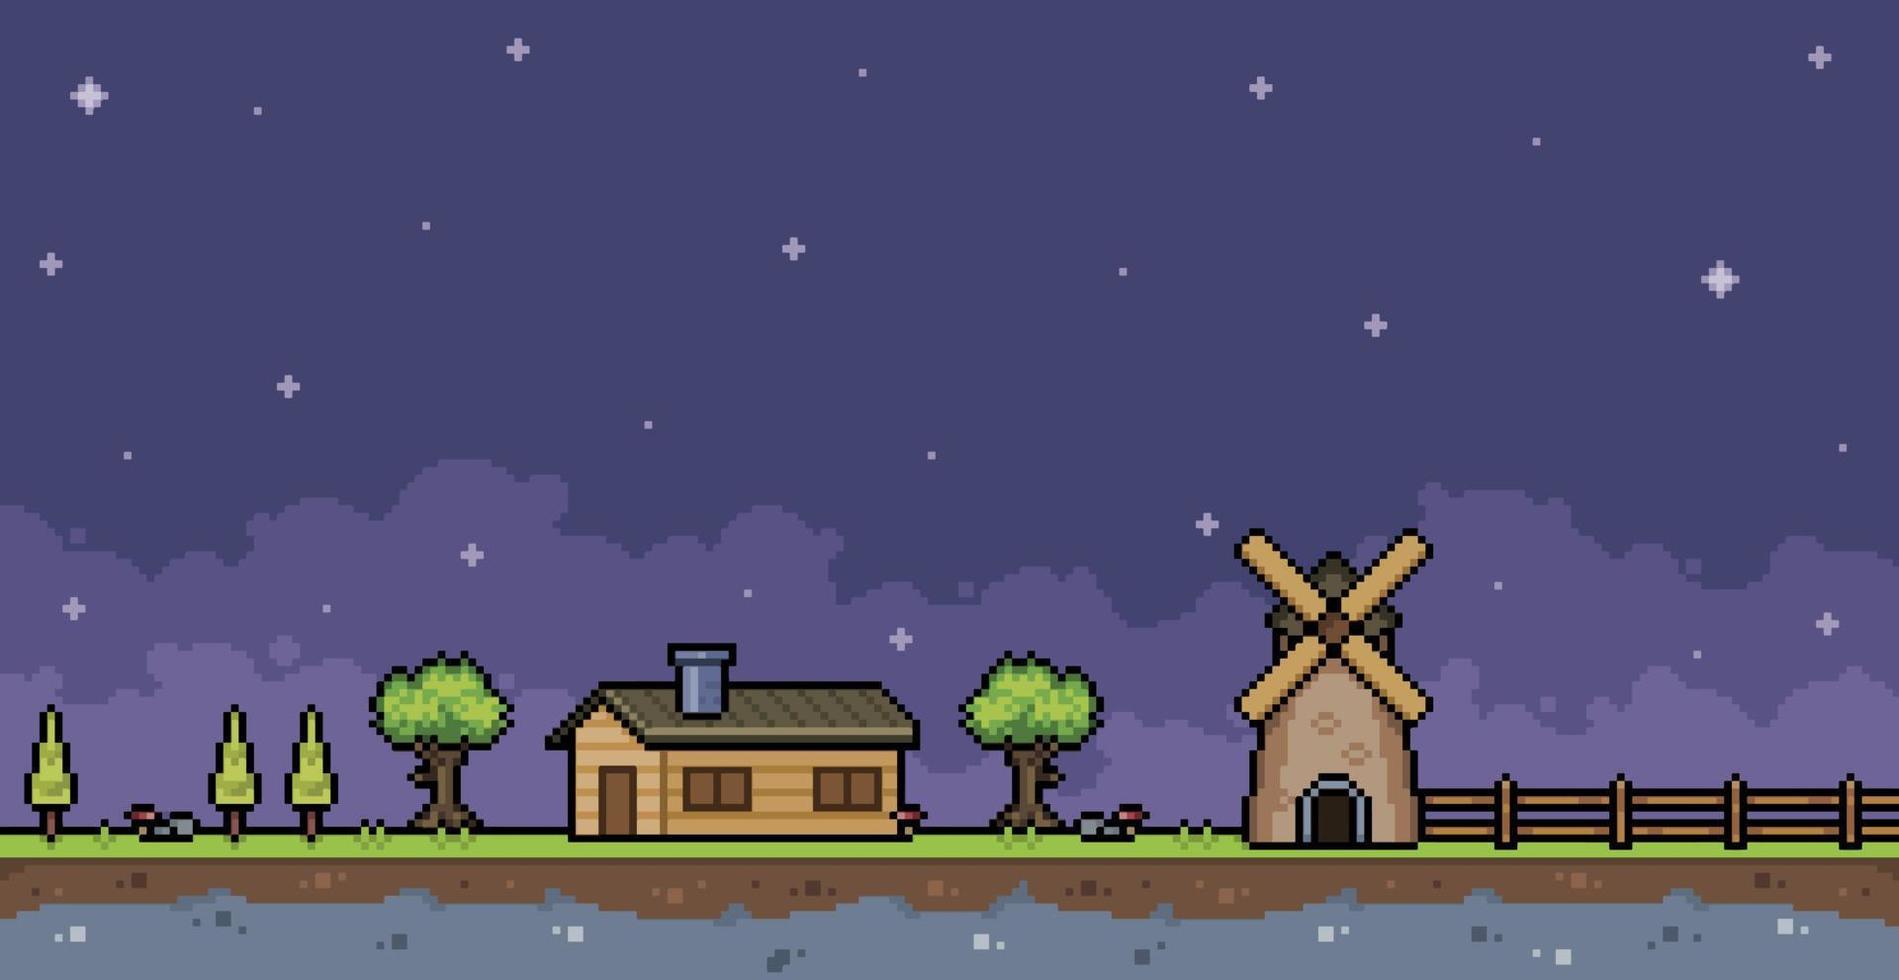 pixel kunst boerderij Bij nacht met huis, schutting, molen en boom 8 beetje spel achtergrond vector